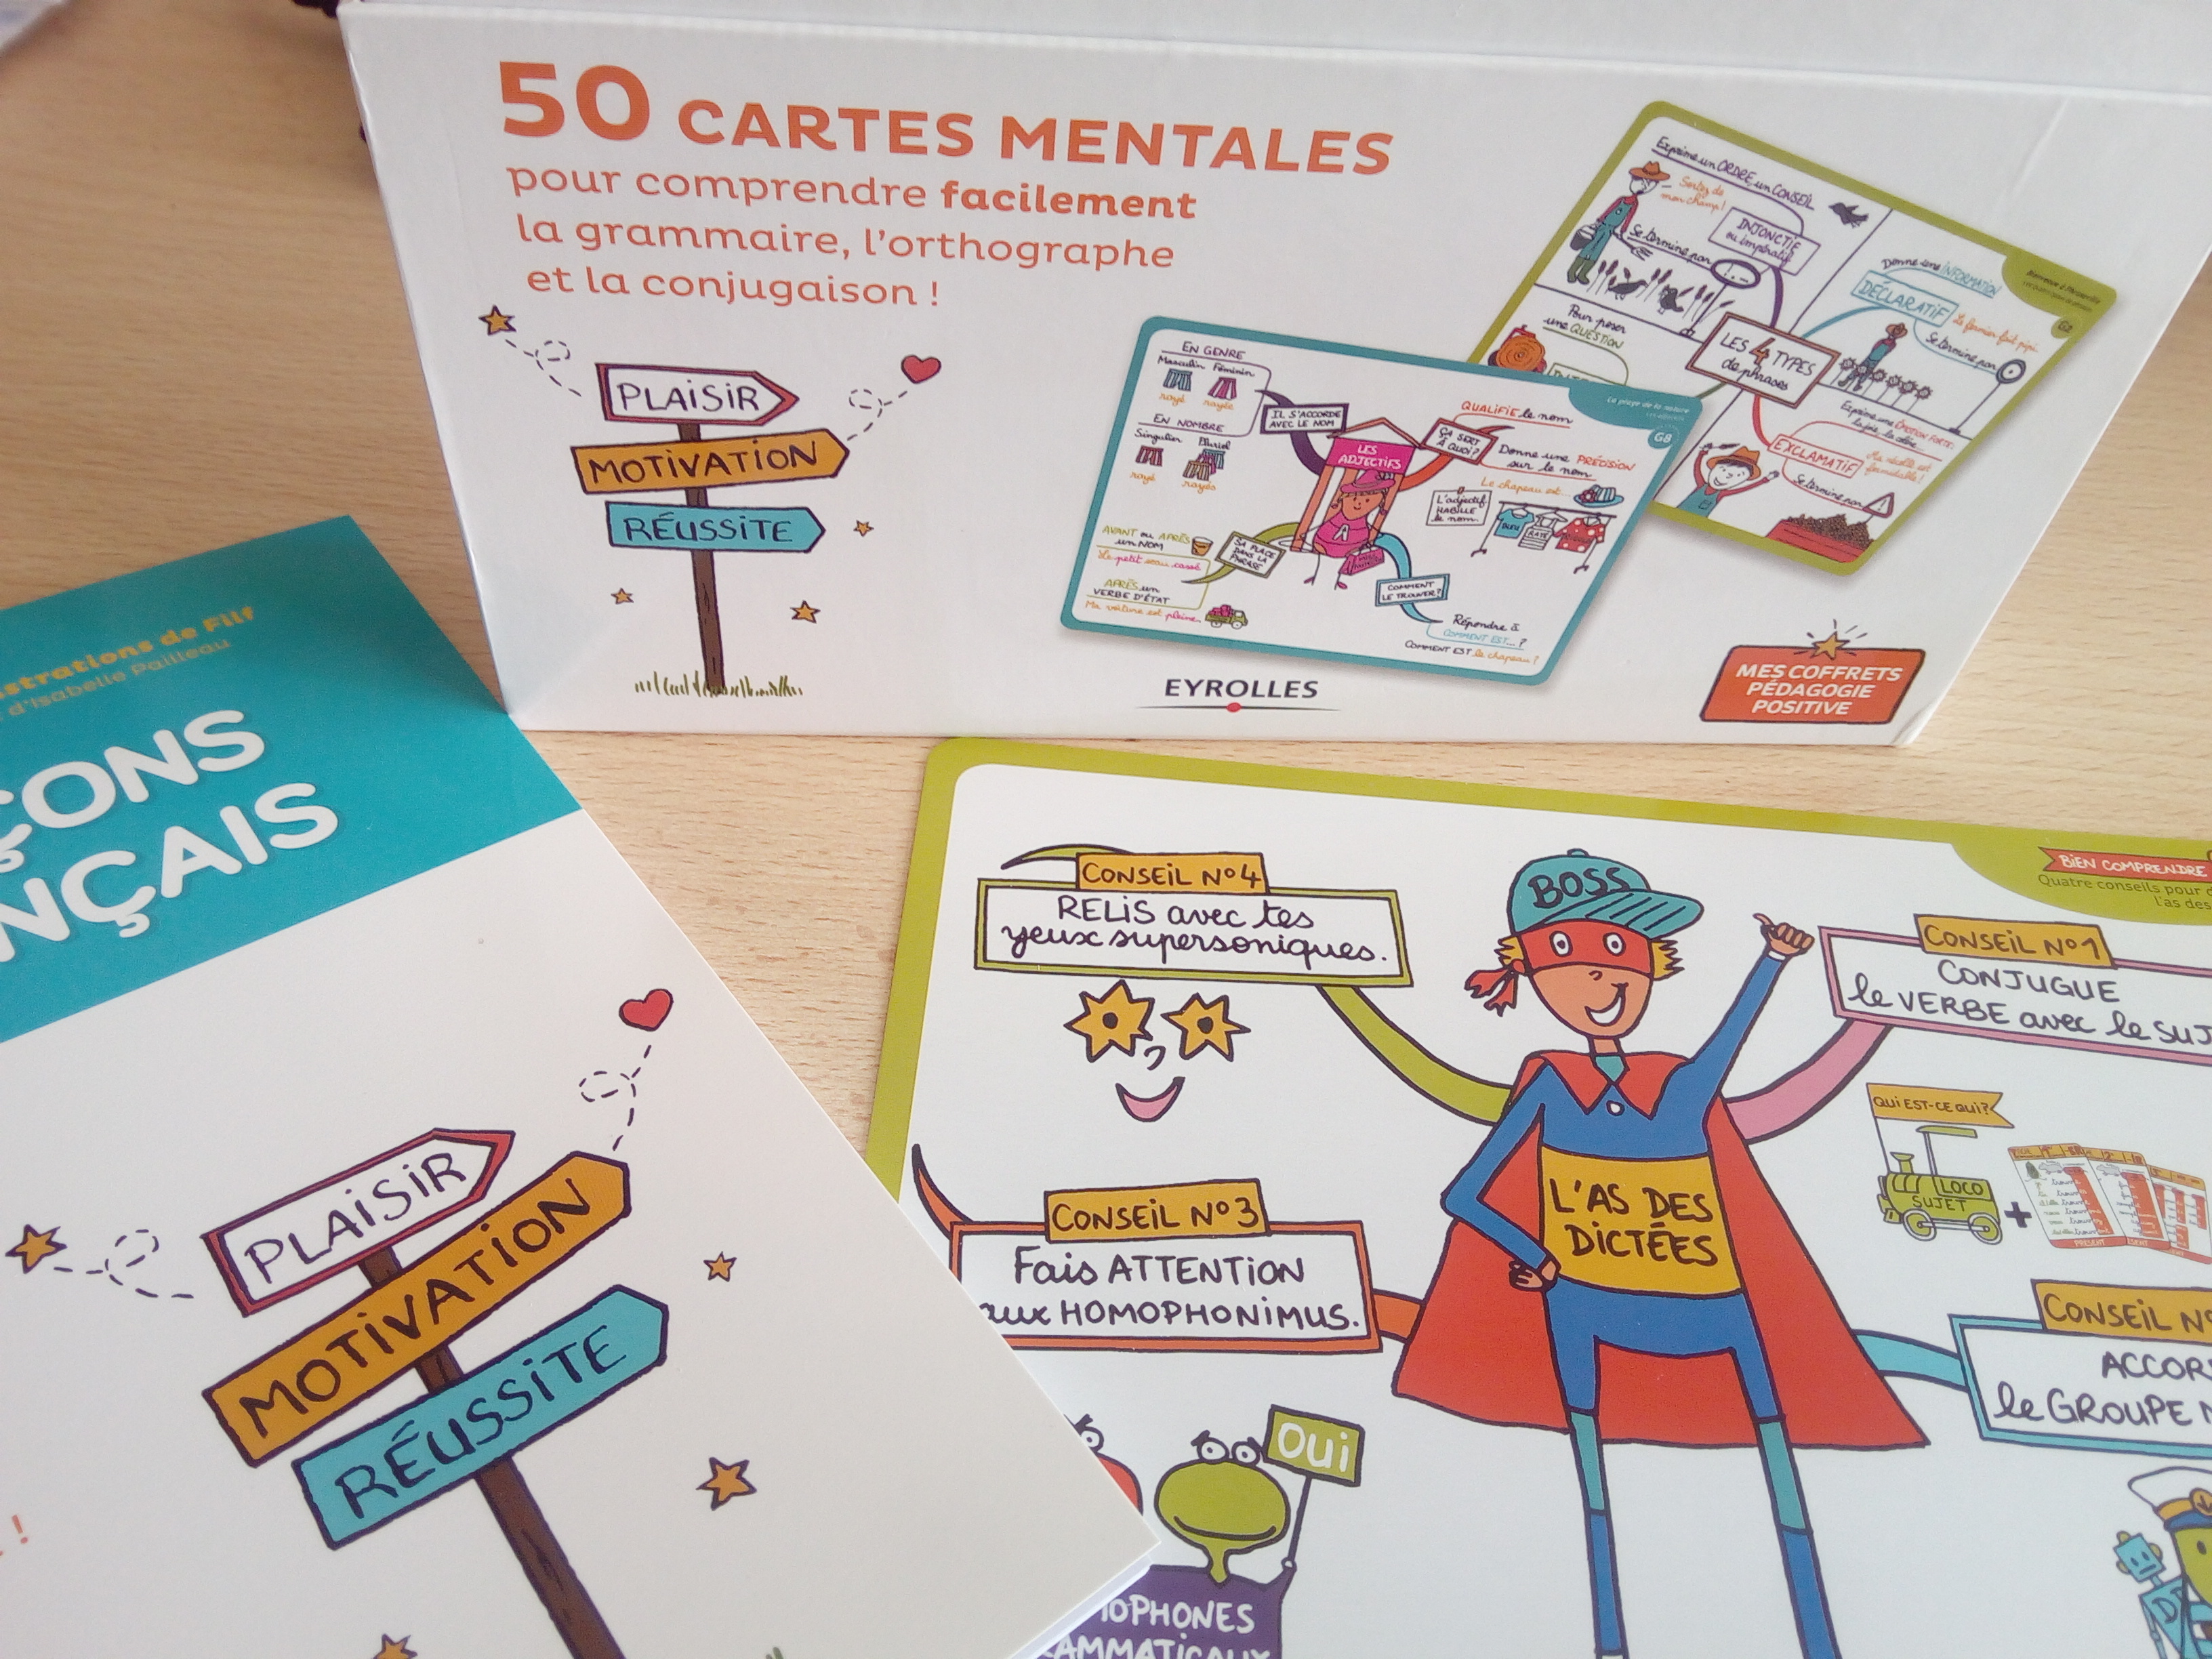 50 cartes mentales pour comprendre facilement le français (grammaire,  orthographe, conjugaison)